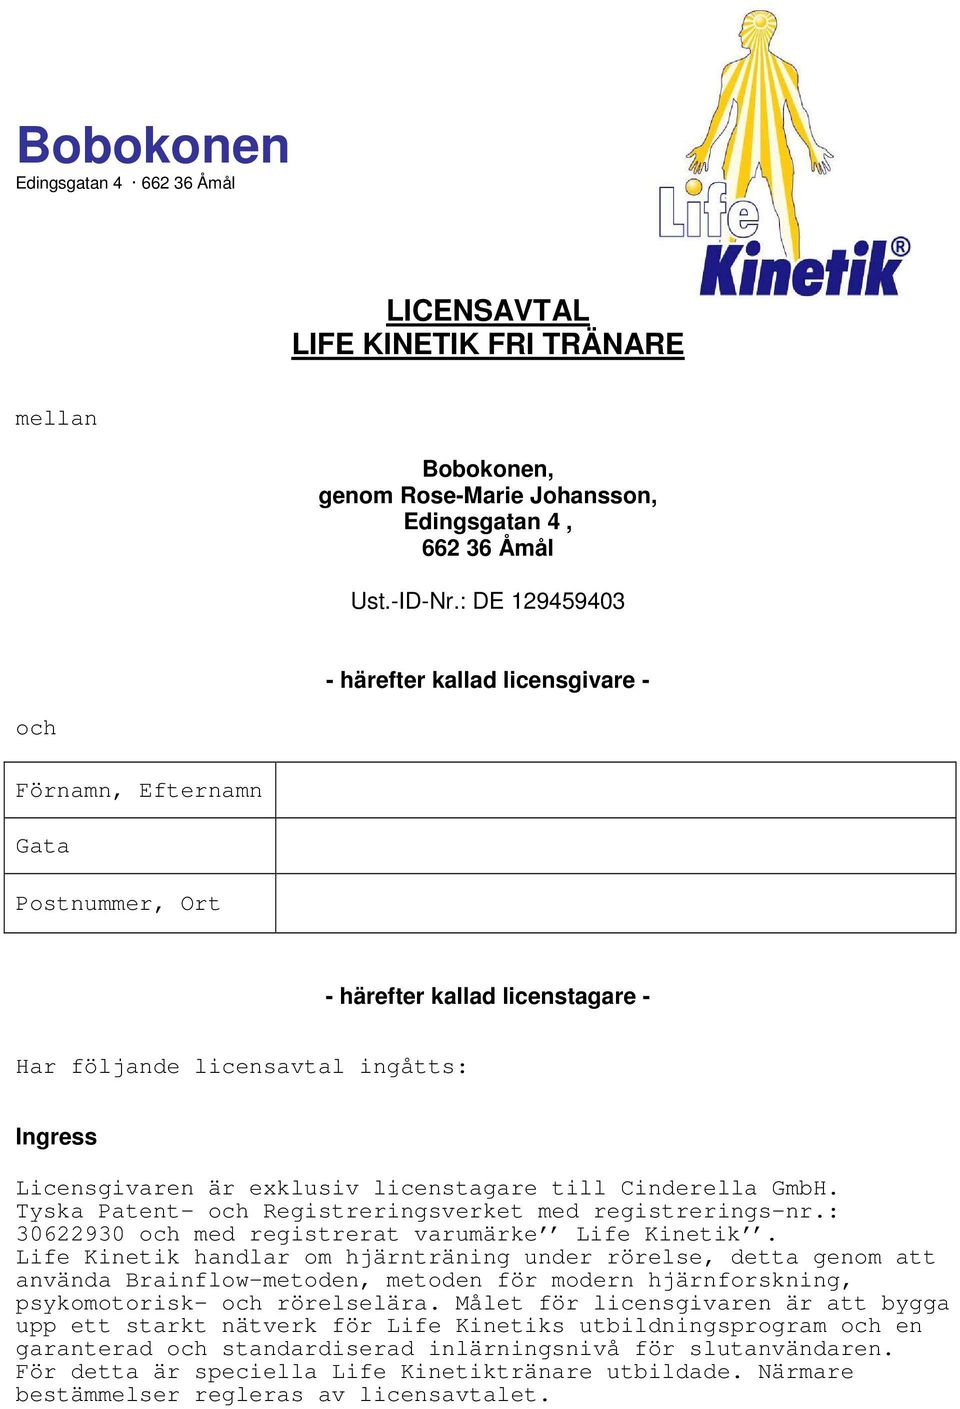 licenstagare till Cinderella GmbH. Tyska Patent- och Registreringsverket med registrerings-nr.: 30622930 och med registrerat varumärke Life Kinetik.